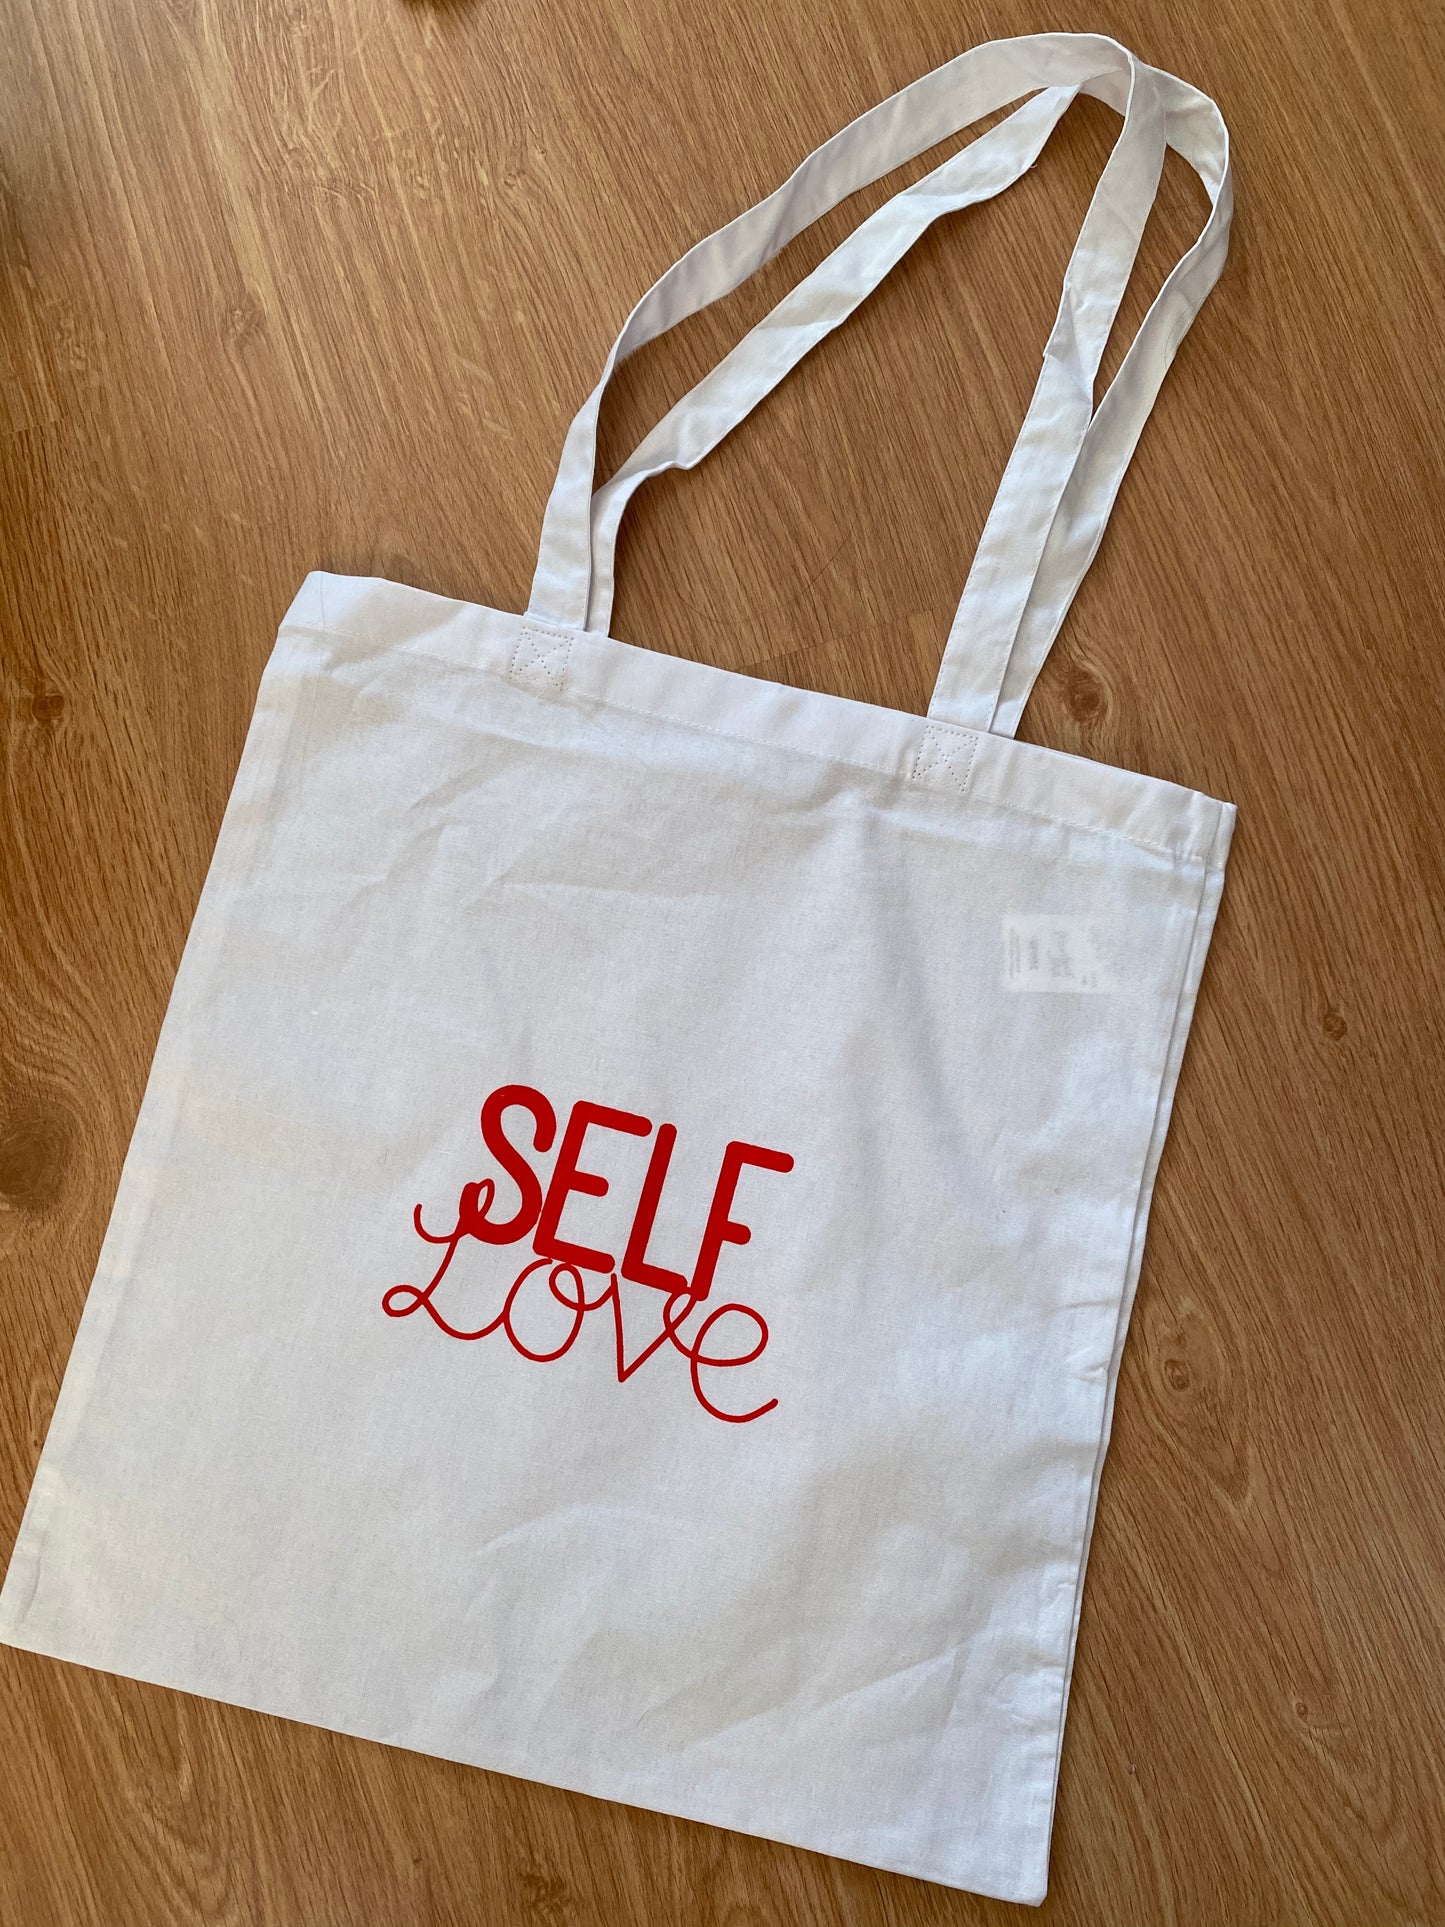 Self love tote bag